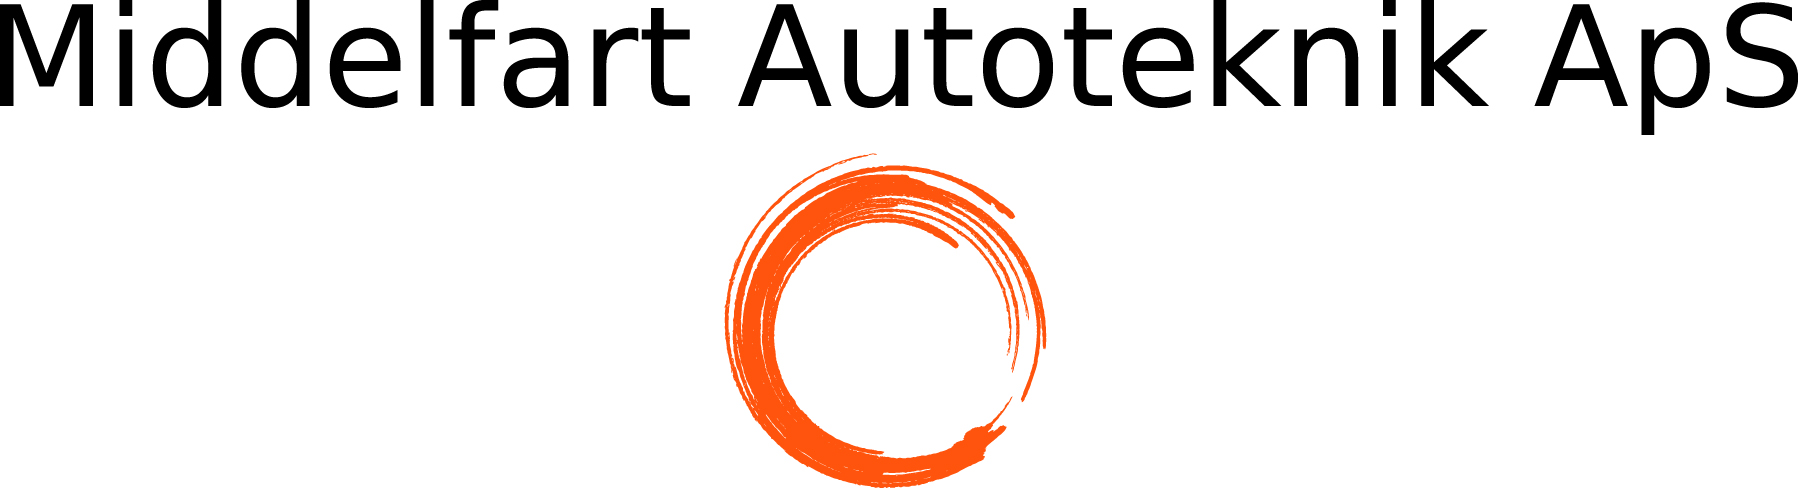 Middelfart Autoteknik logo